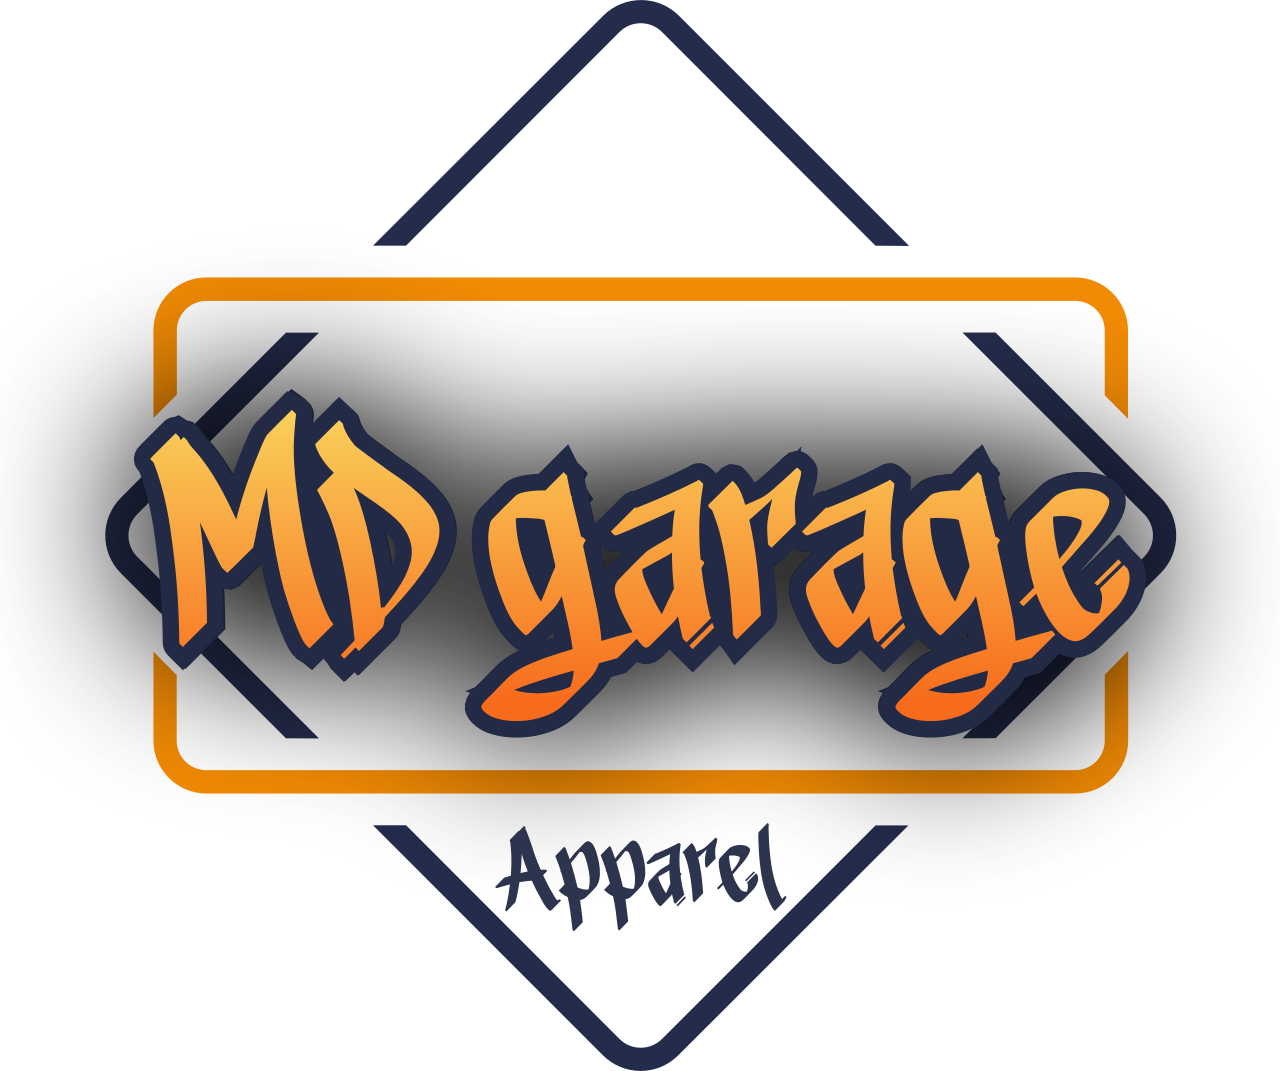 MD garage's logo